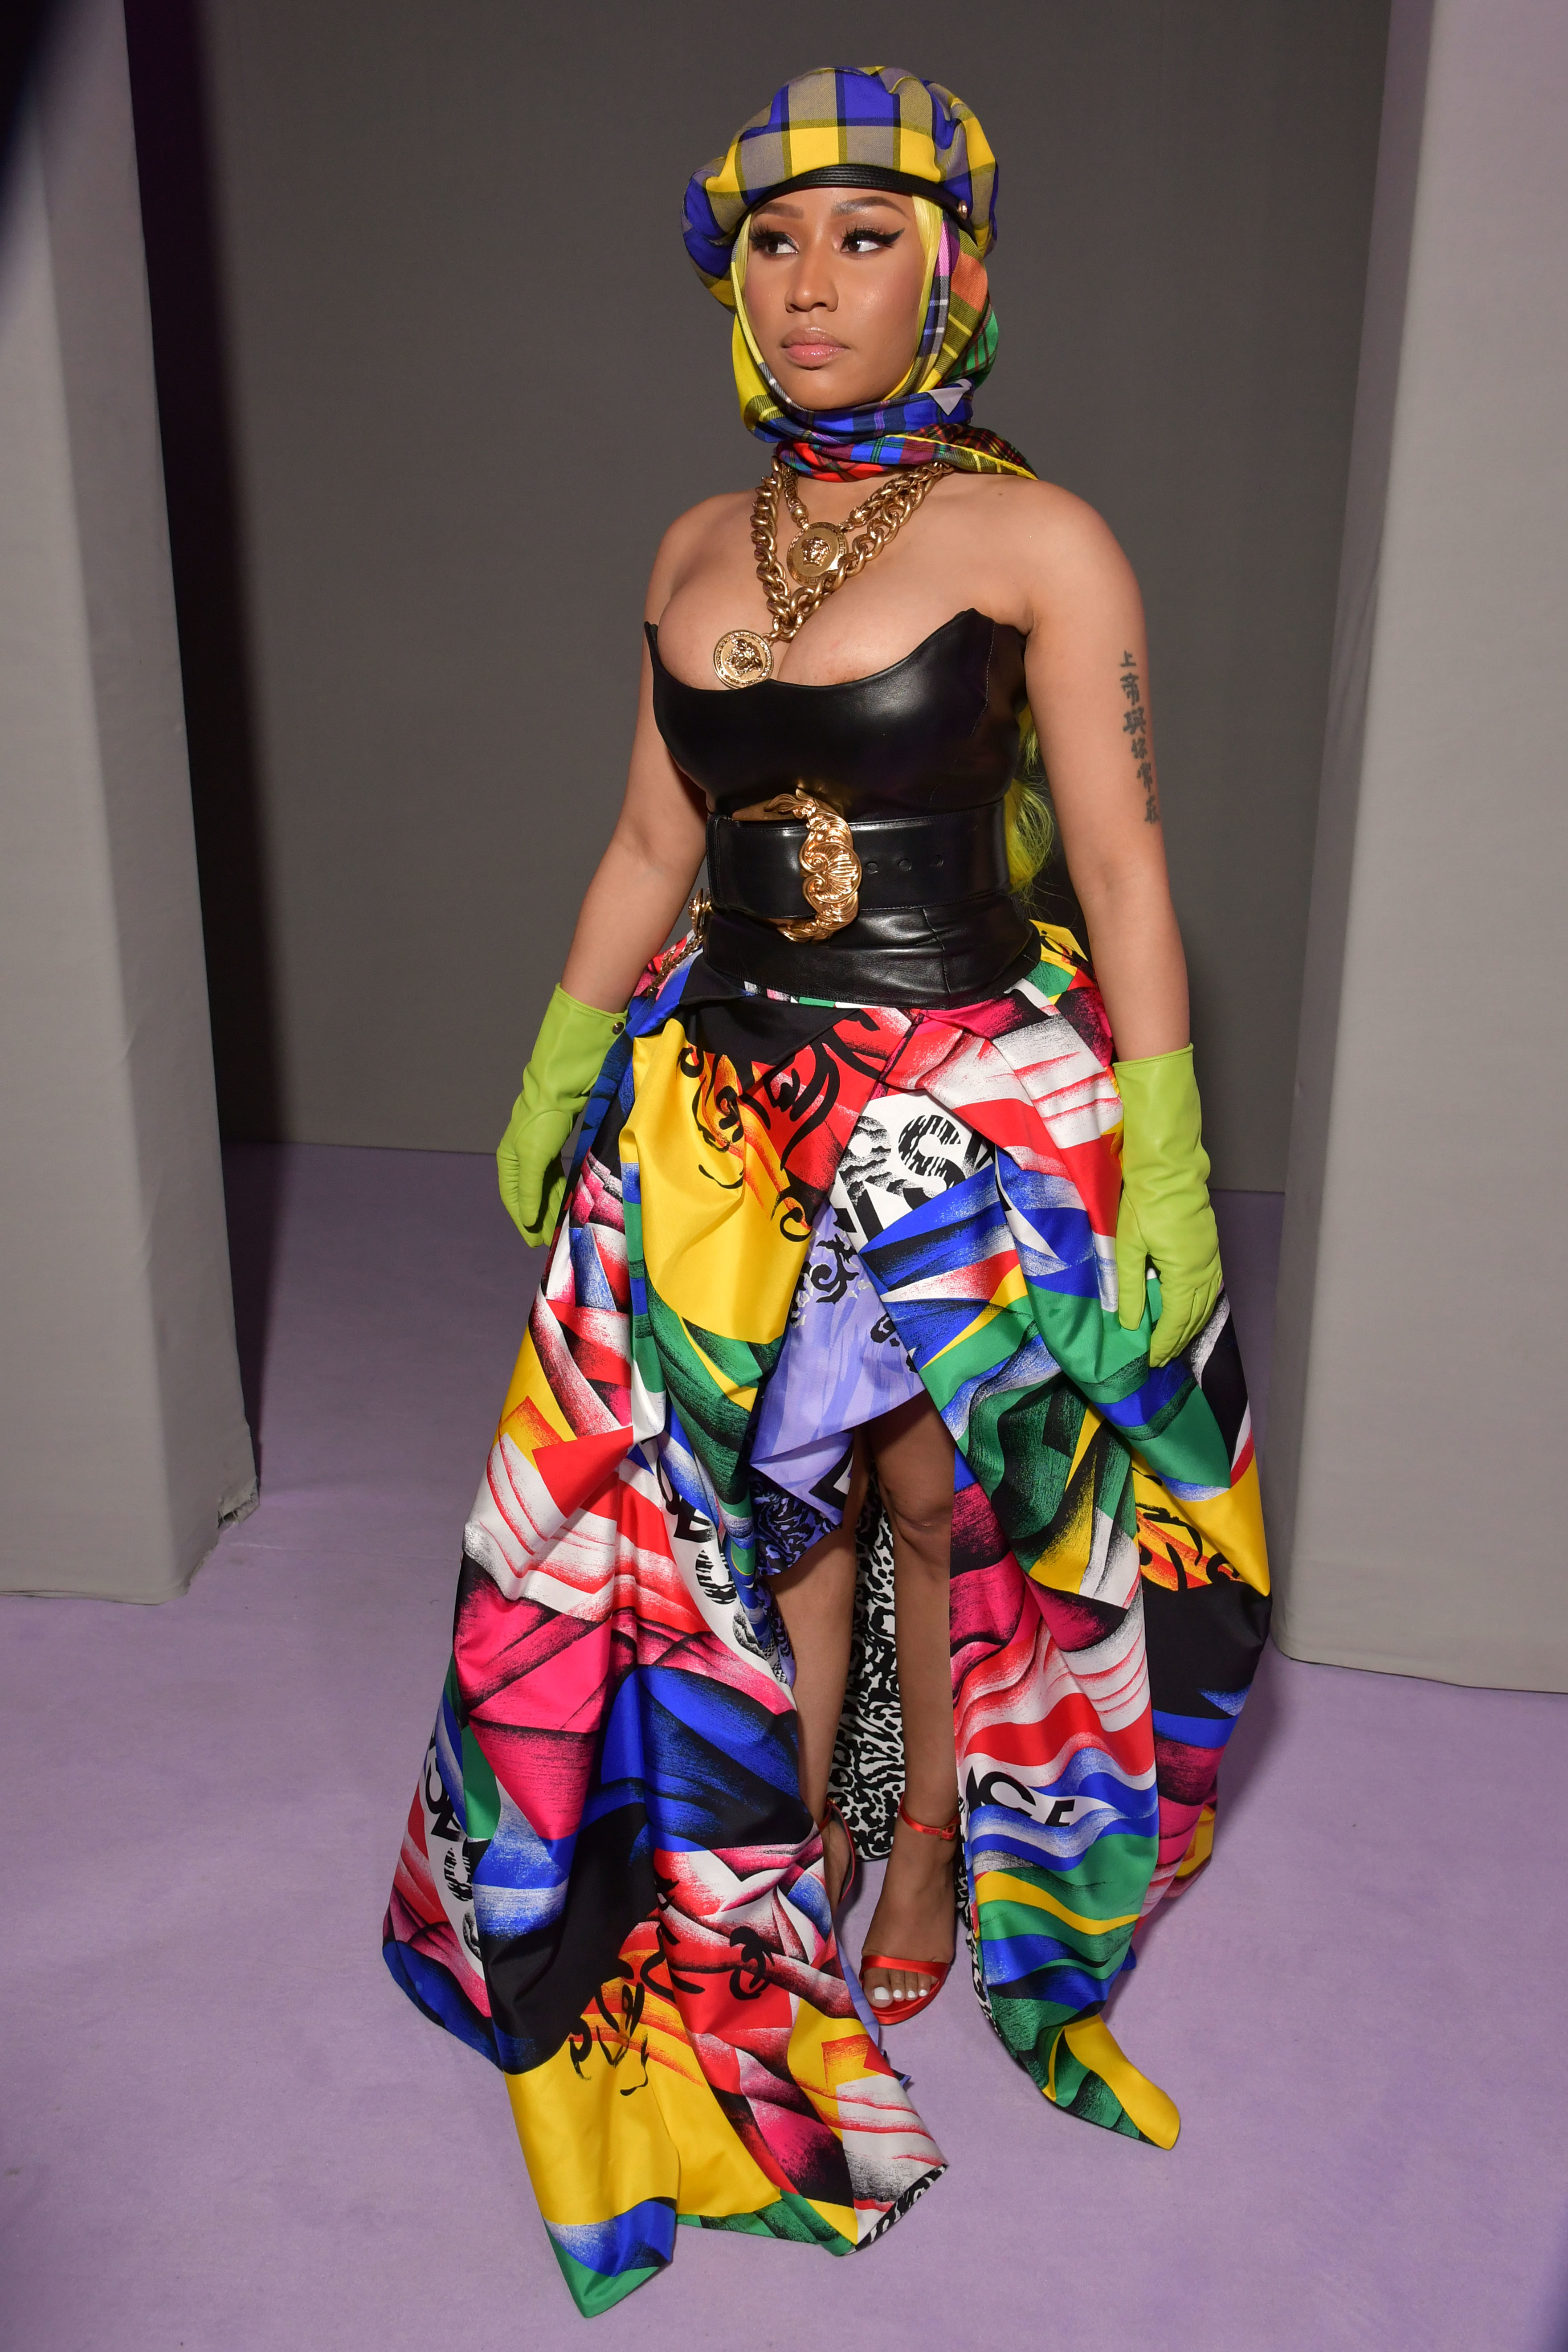 Nicki Minaj appears in 'tattooed' suit by Ukrainian brand - Feb